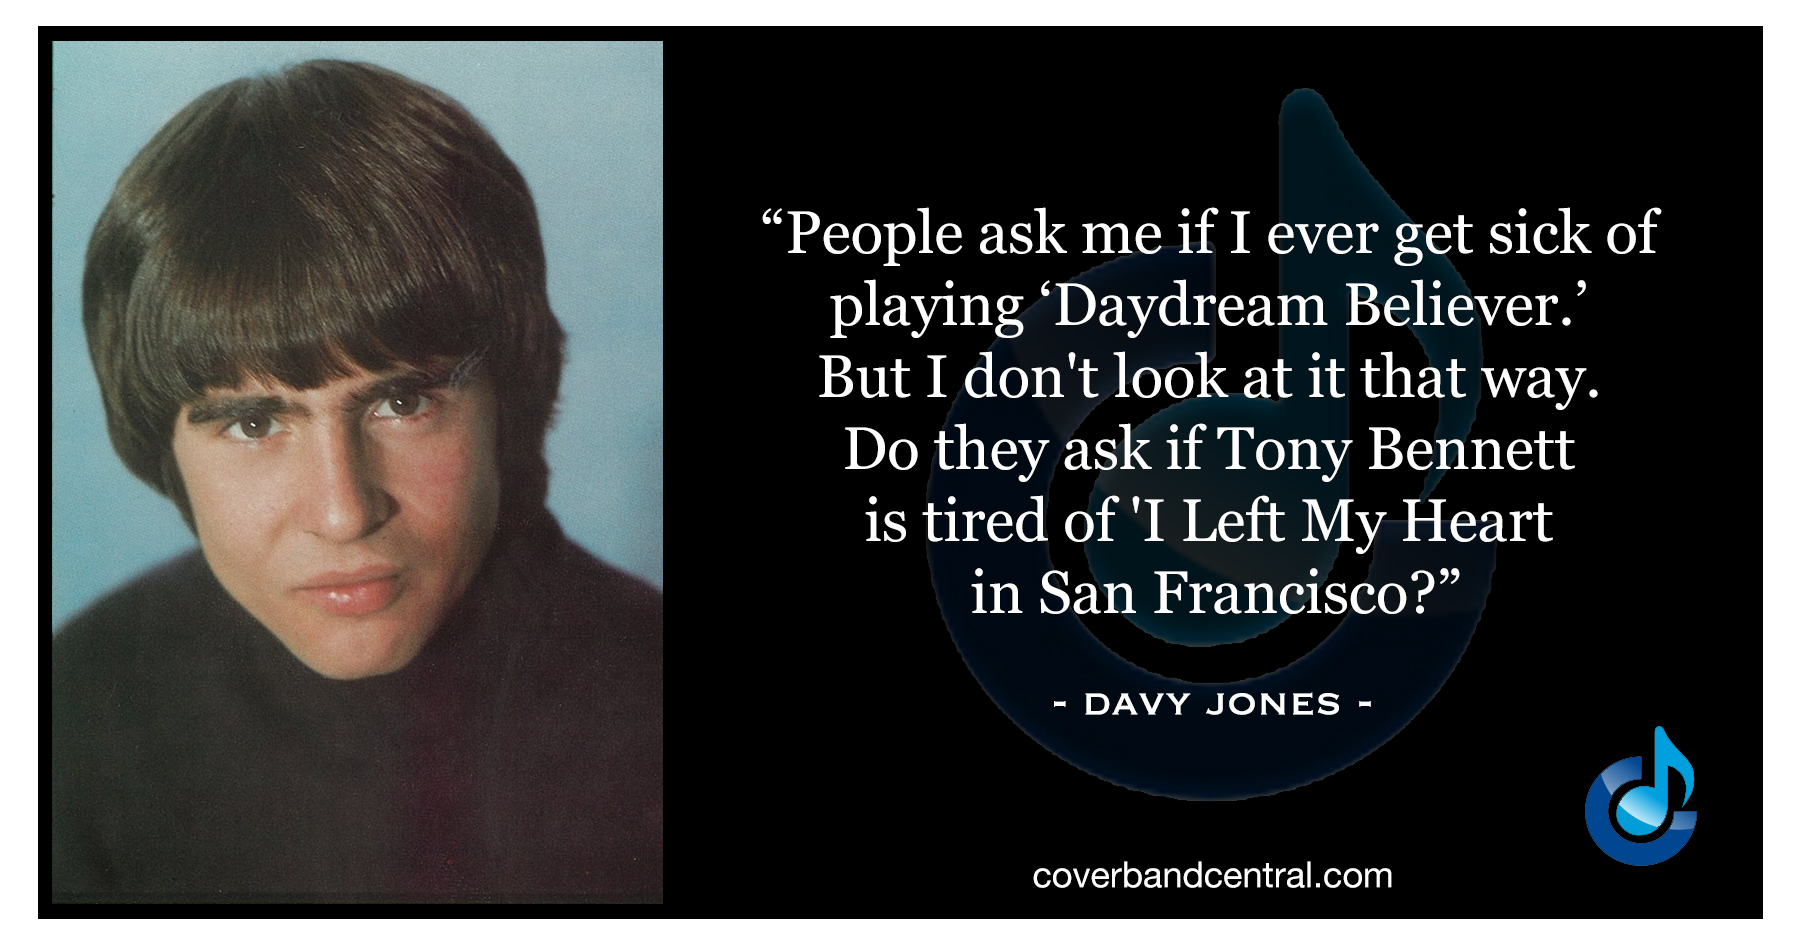 Davy Jones quote